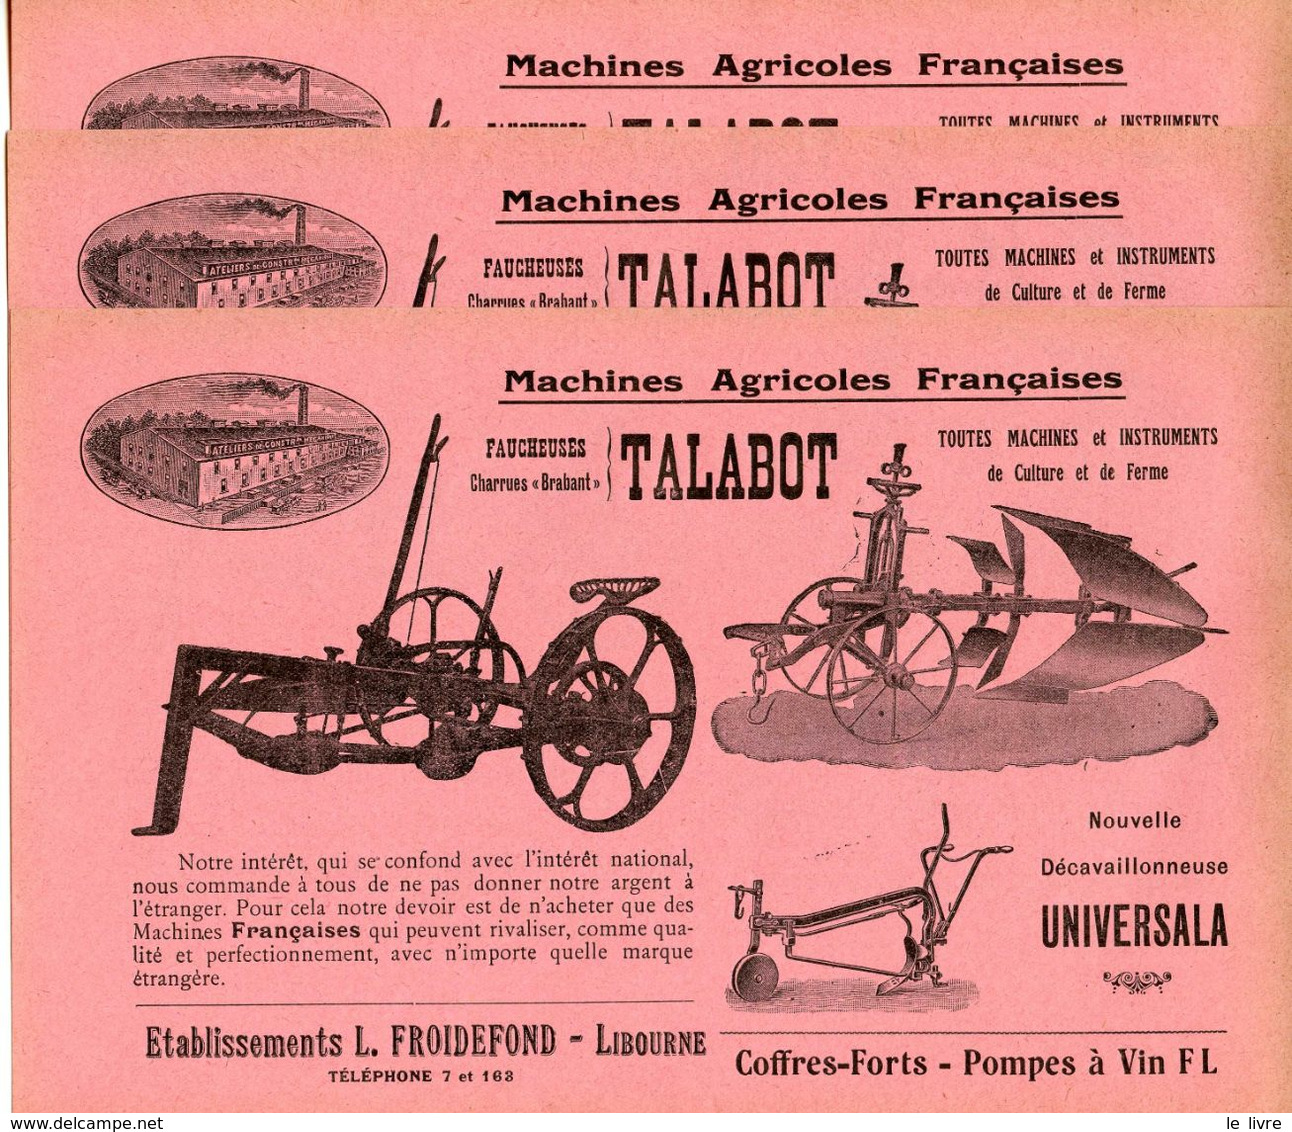 LIBOURNE 33 LOT DE 3 PROSPECTUS ET 3 MANDATS A ORDRE MACHINES AGRICOLES POMPES A VIN FROIDEFOND 1920